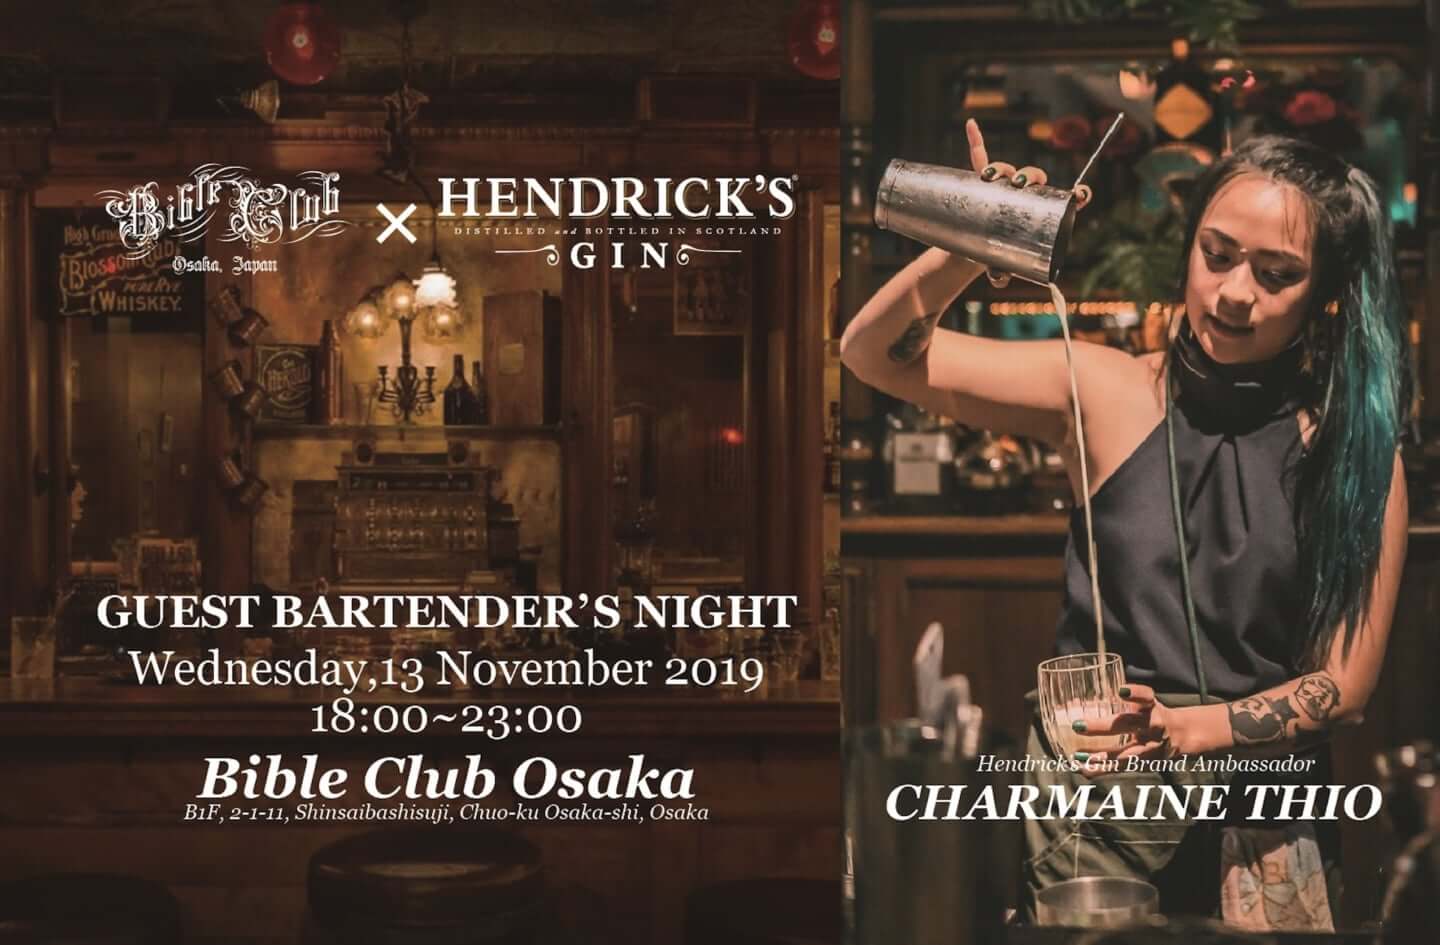 ストリートなイベント 大阪 Bible Club Osaka Hendrick S Gin ゲストバーテンダーナイト 最高級のクラフトジンカクテルを 大阪で Represent